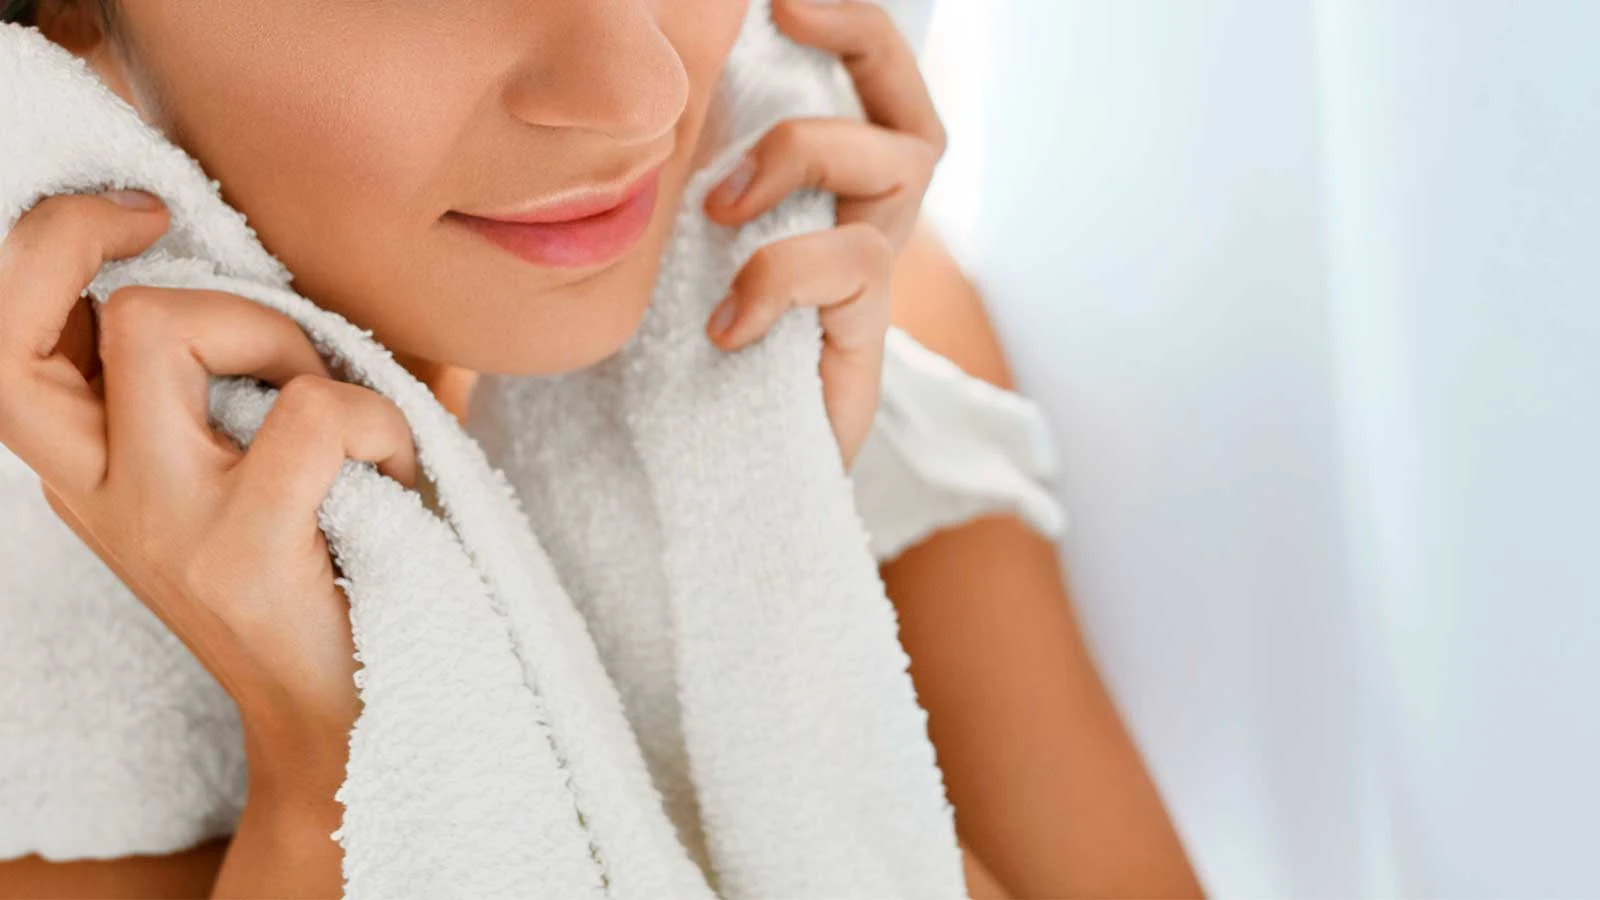 Återfukta din ansiktshud med en varm, fuktig tvättduk för att raka dig lättare